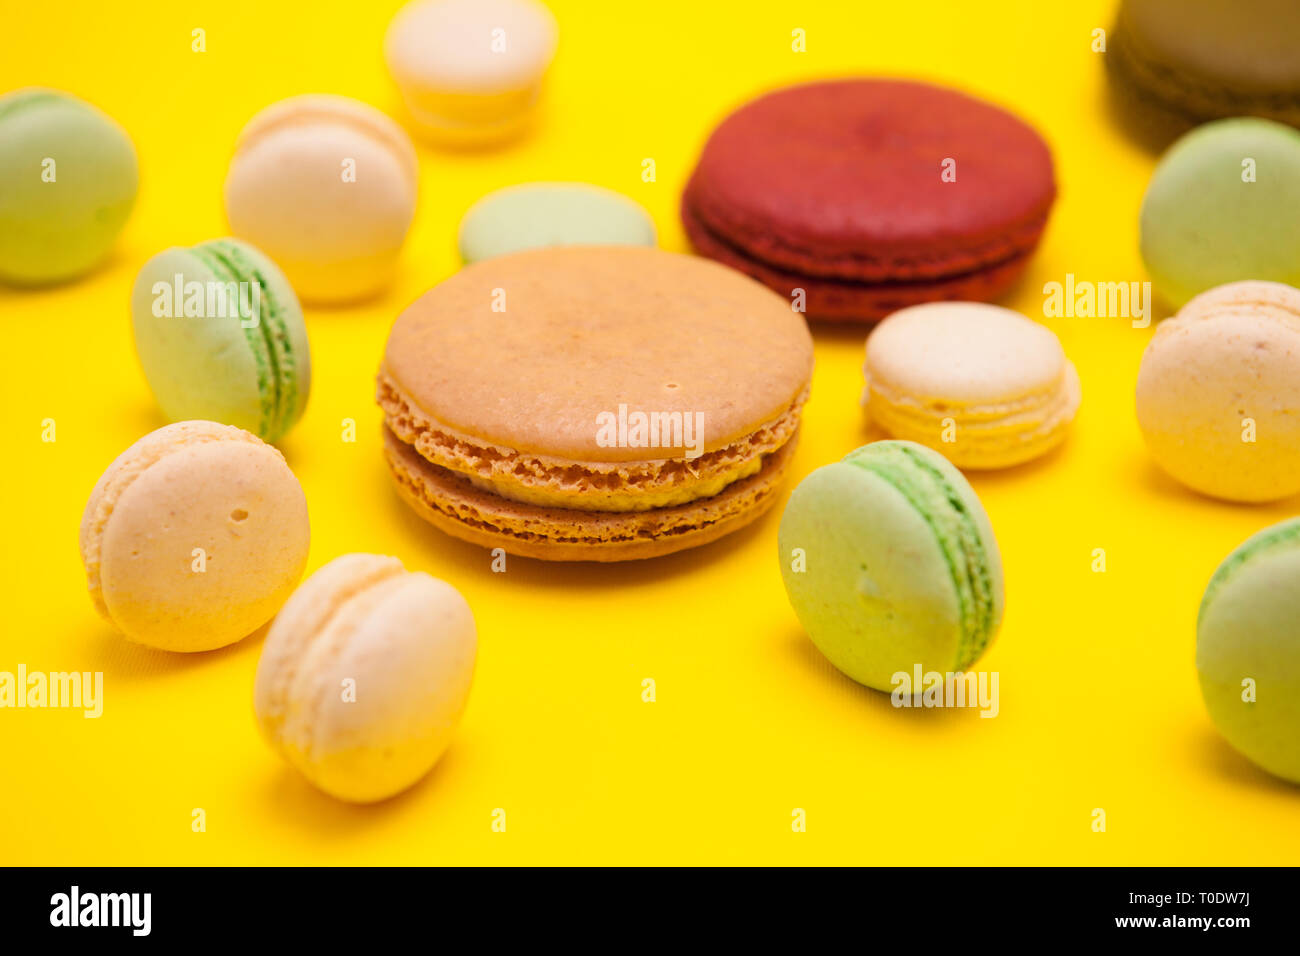 Différents schémas de macarons français colorés sur fond jaune. Desserts sucrés Banque D'Images